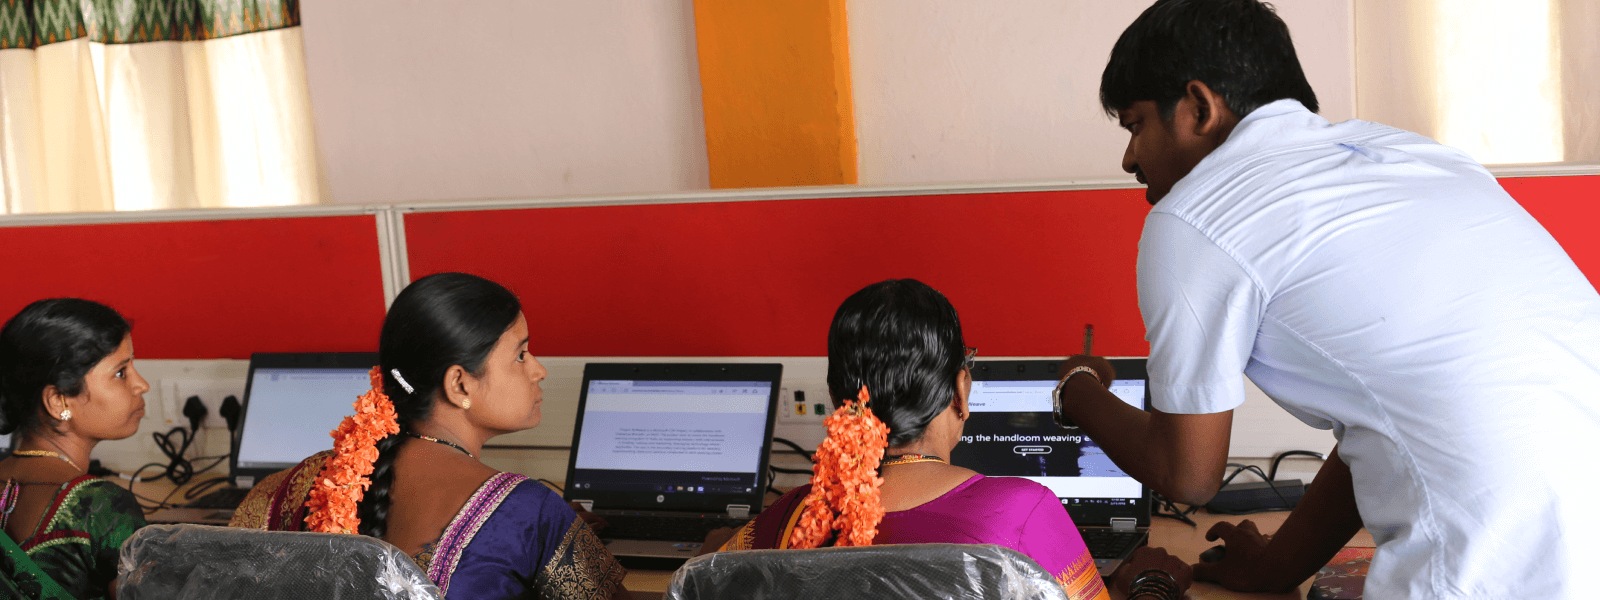 Dans un laboratoire informatique, un enseignant s’adresse à trois étudiants qui se tiennent face à leur ordinateur portable.